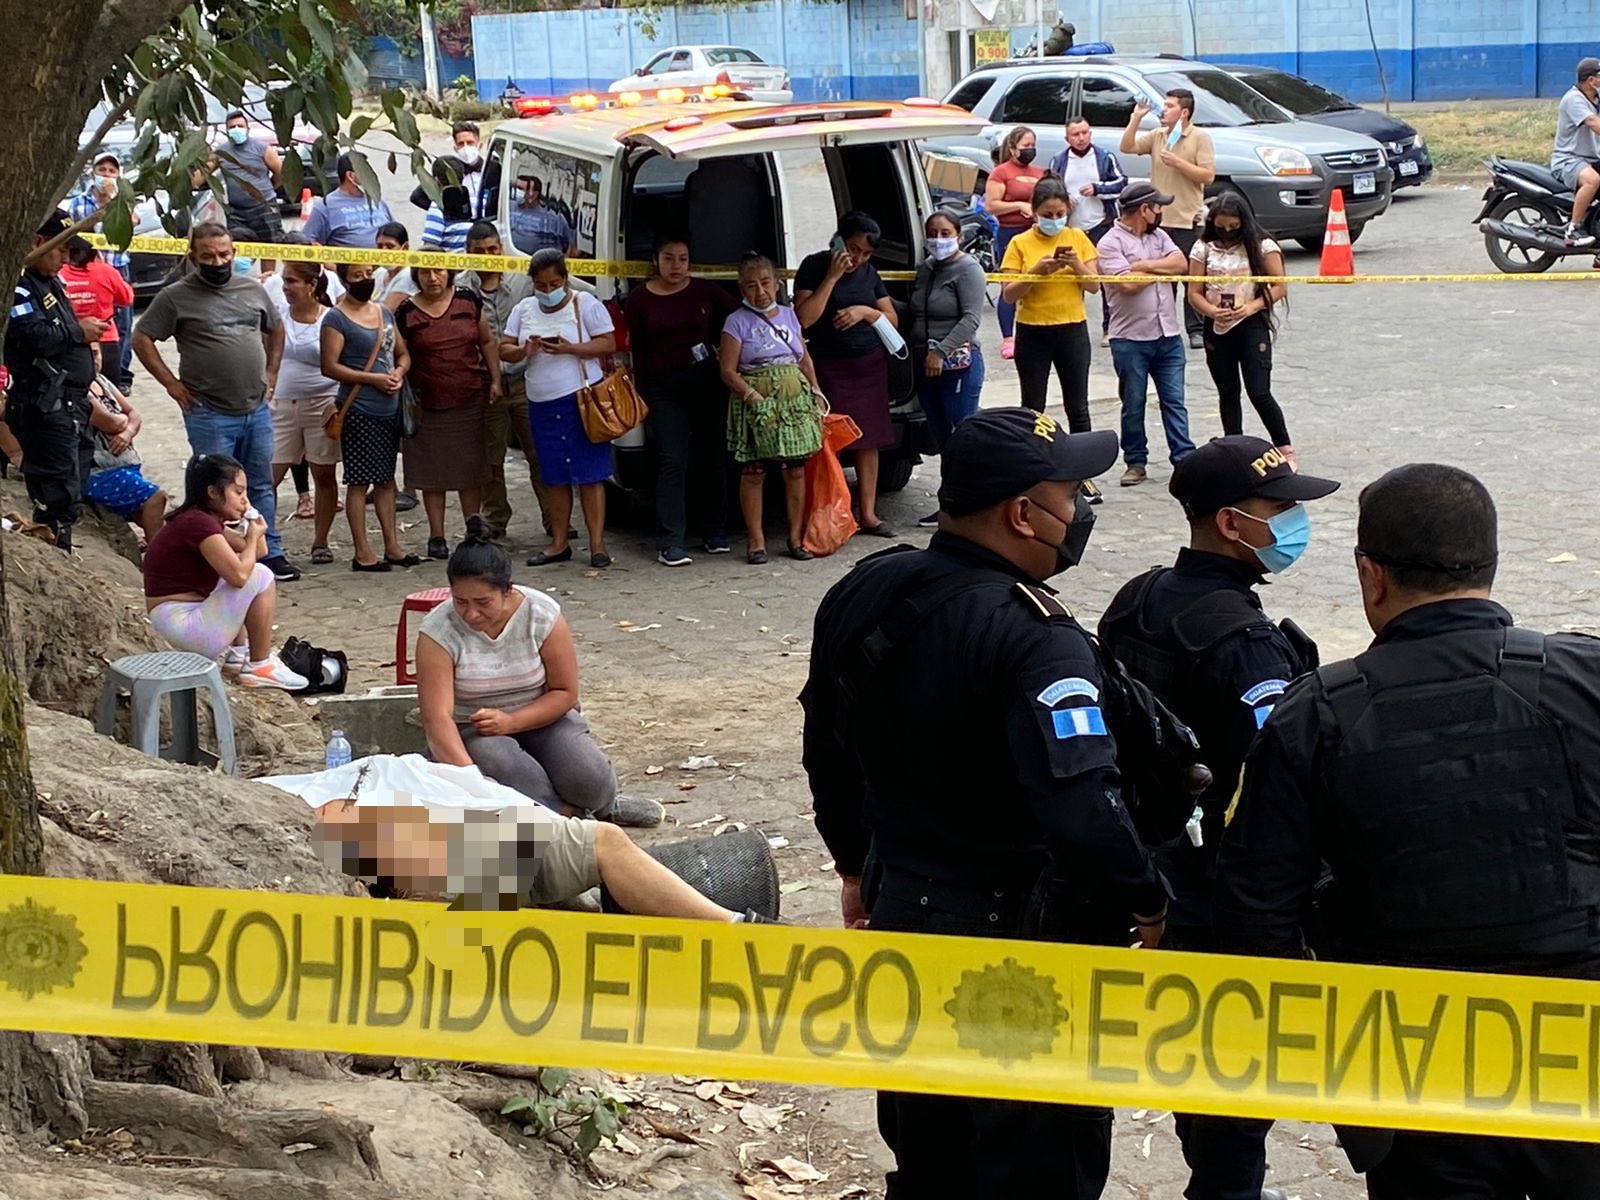 Los homicidios van en aumento en Guatemala y su capital es una de las áreas más afectadas, según informe del Cien. (Foto Prensa Libre: Tomada de @BVoluntariosGT)